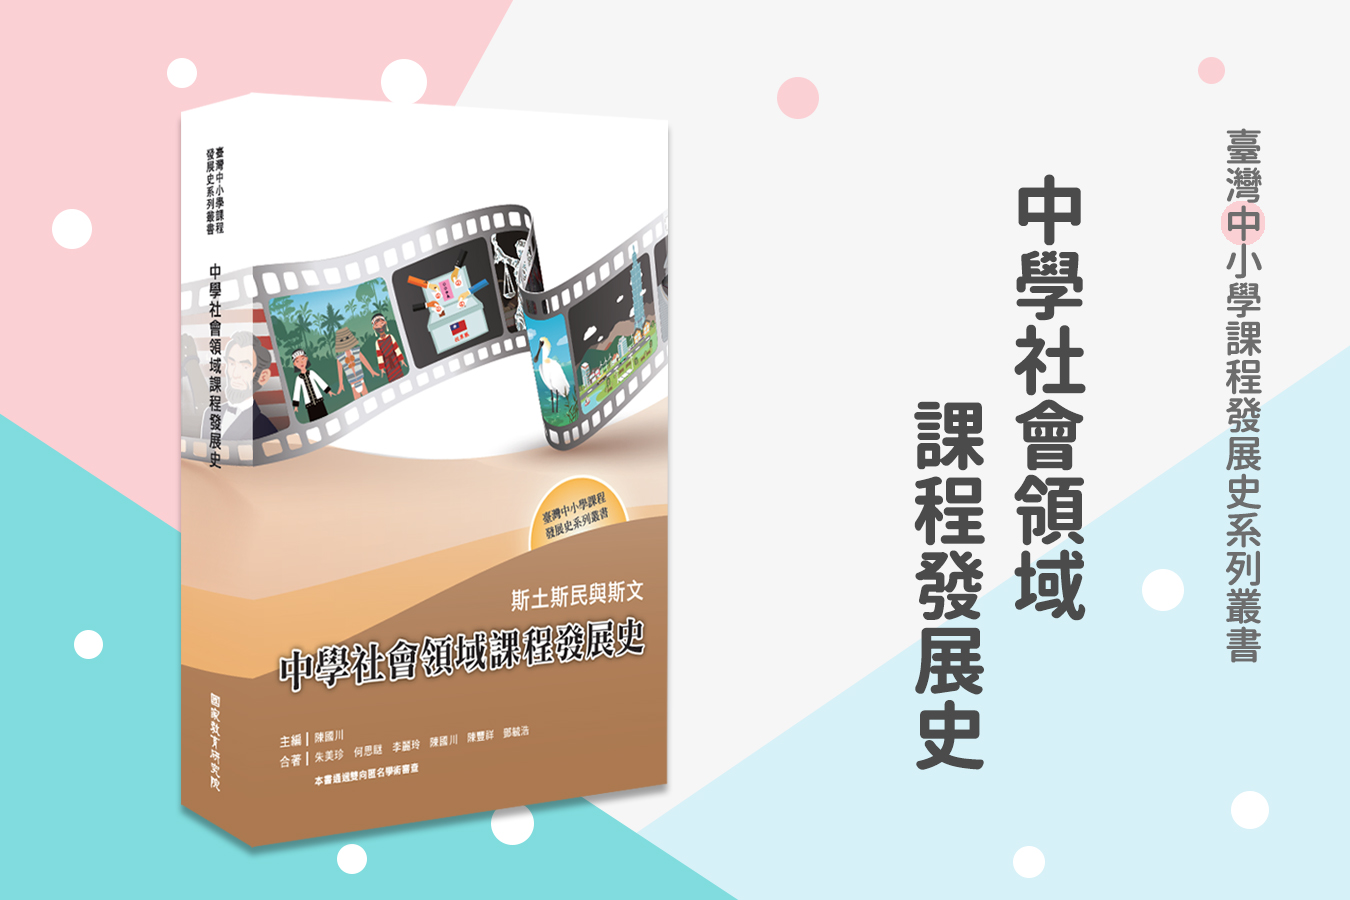 新書推薦：《斯土斯民與斯文——中學社會領域課程發展史》